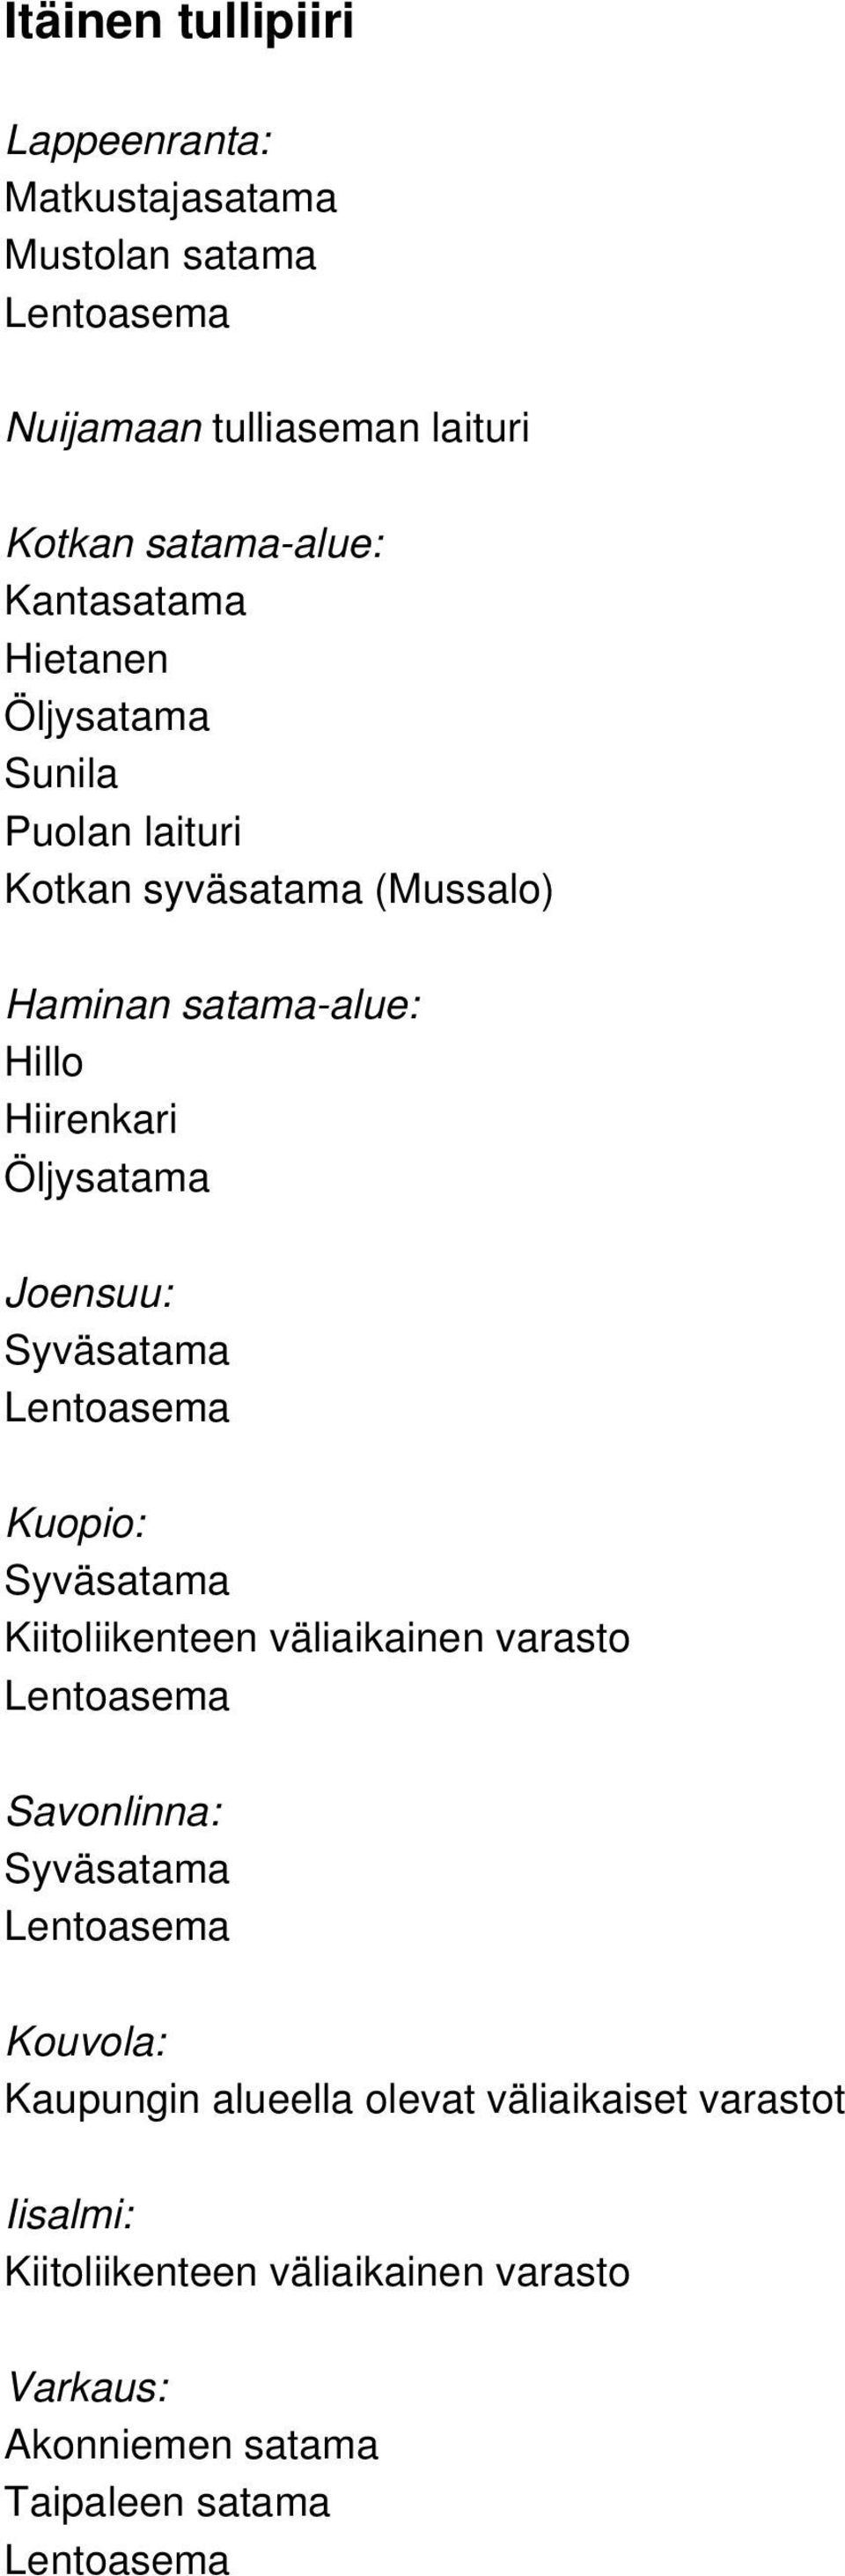 satama-alue: Hillo Hiirenkari Öljysatama Joensuu: Kuopio: Kiitoliikenteen väliaikainen varasto Savonlinna: